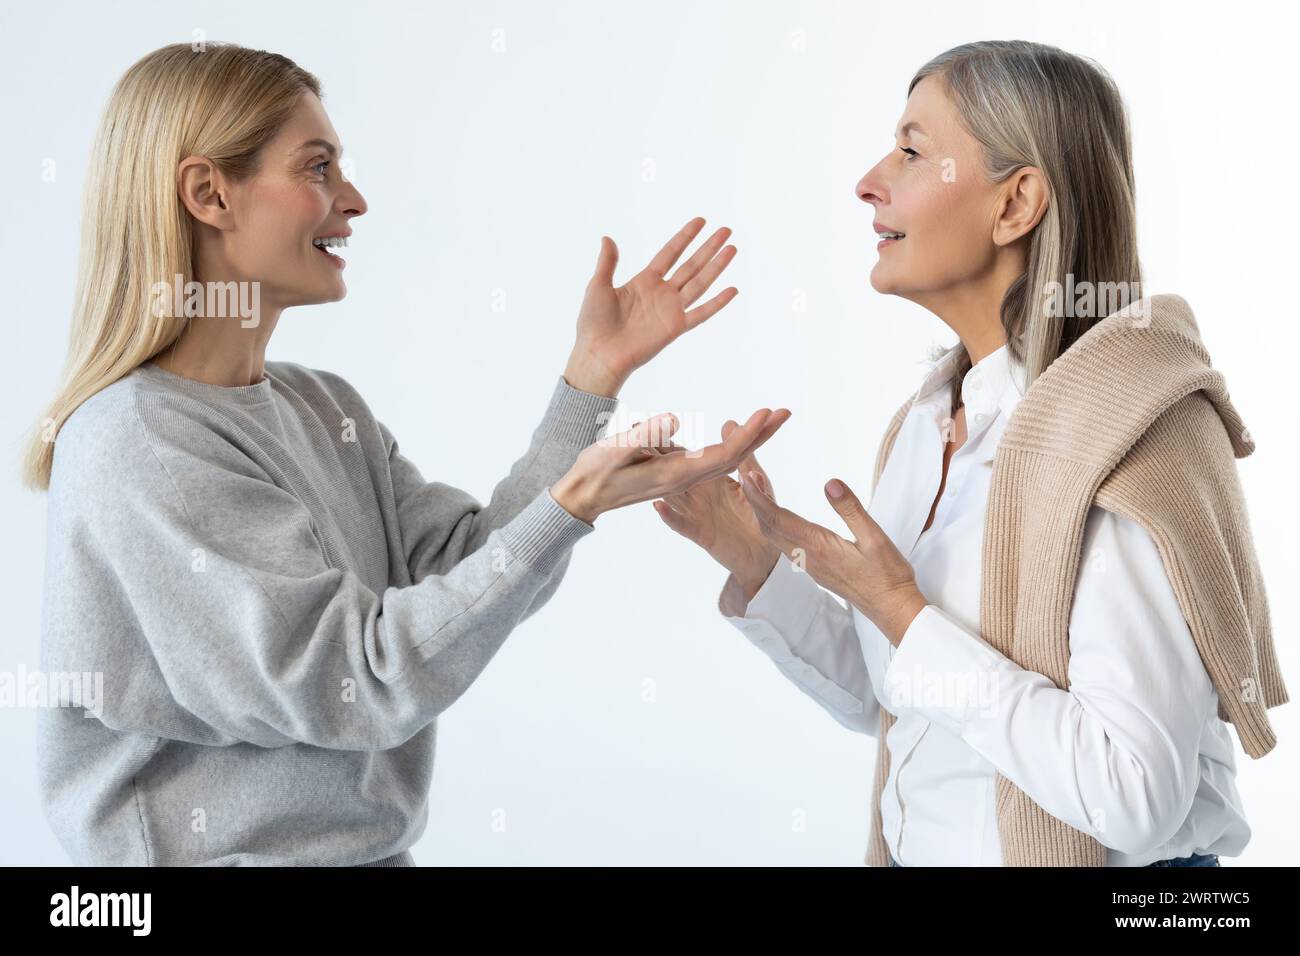 Maman et fille gesticulant et discutant de quelque chose de très émotionnel Banque D'Images